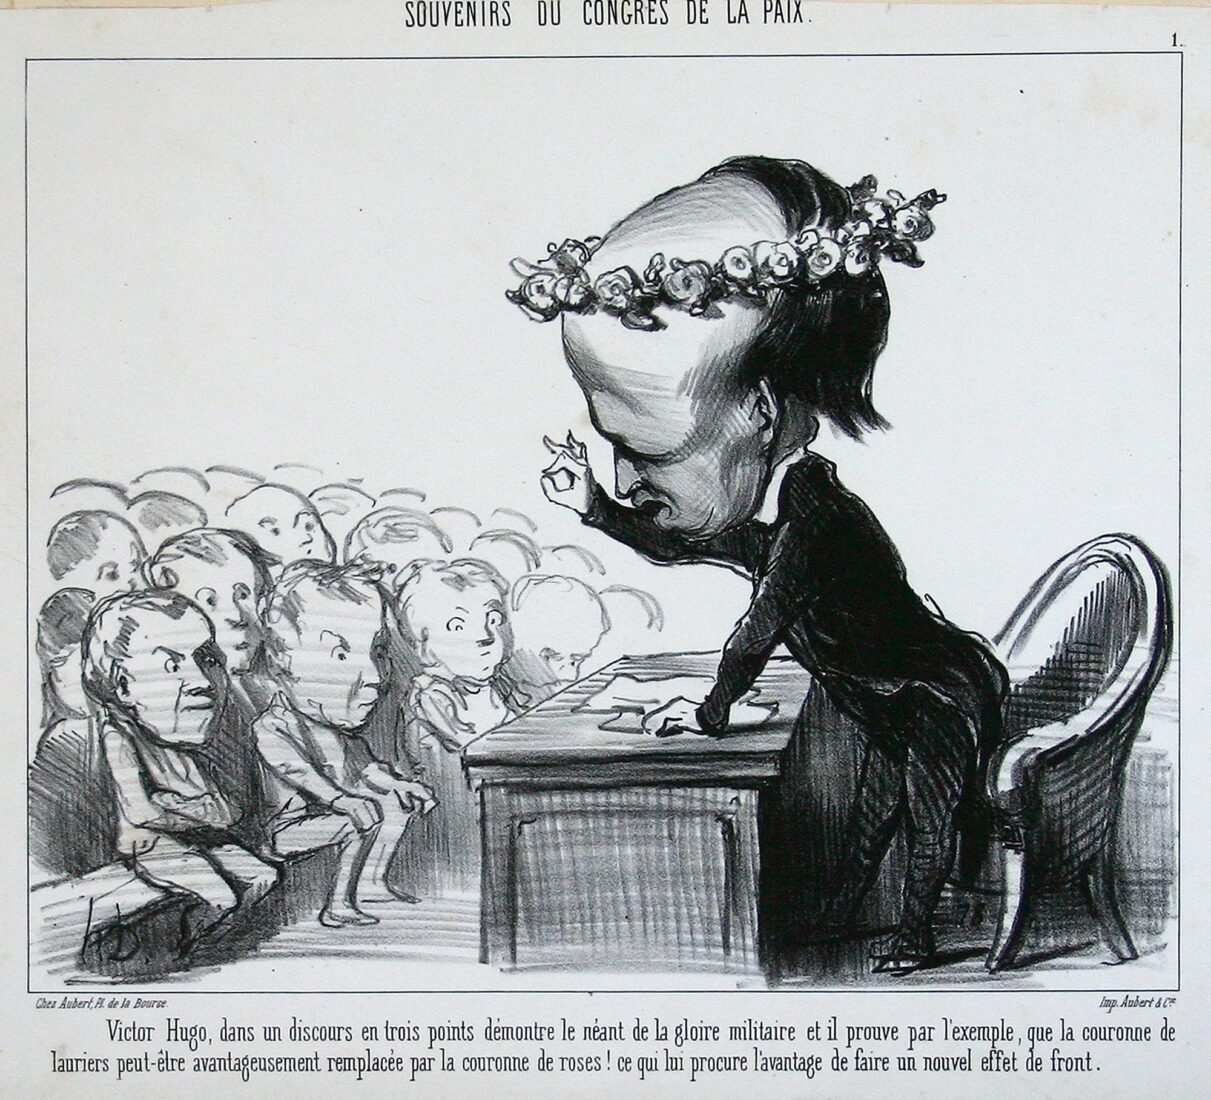 “Ο Βίκτωρ Ουγκό εκθέτει σε τρία σημεία της ομιλίας του την κενότητα της στρατιωτικής φήμης” - Daumier Honore